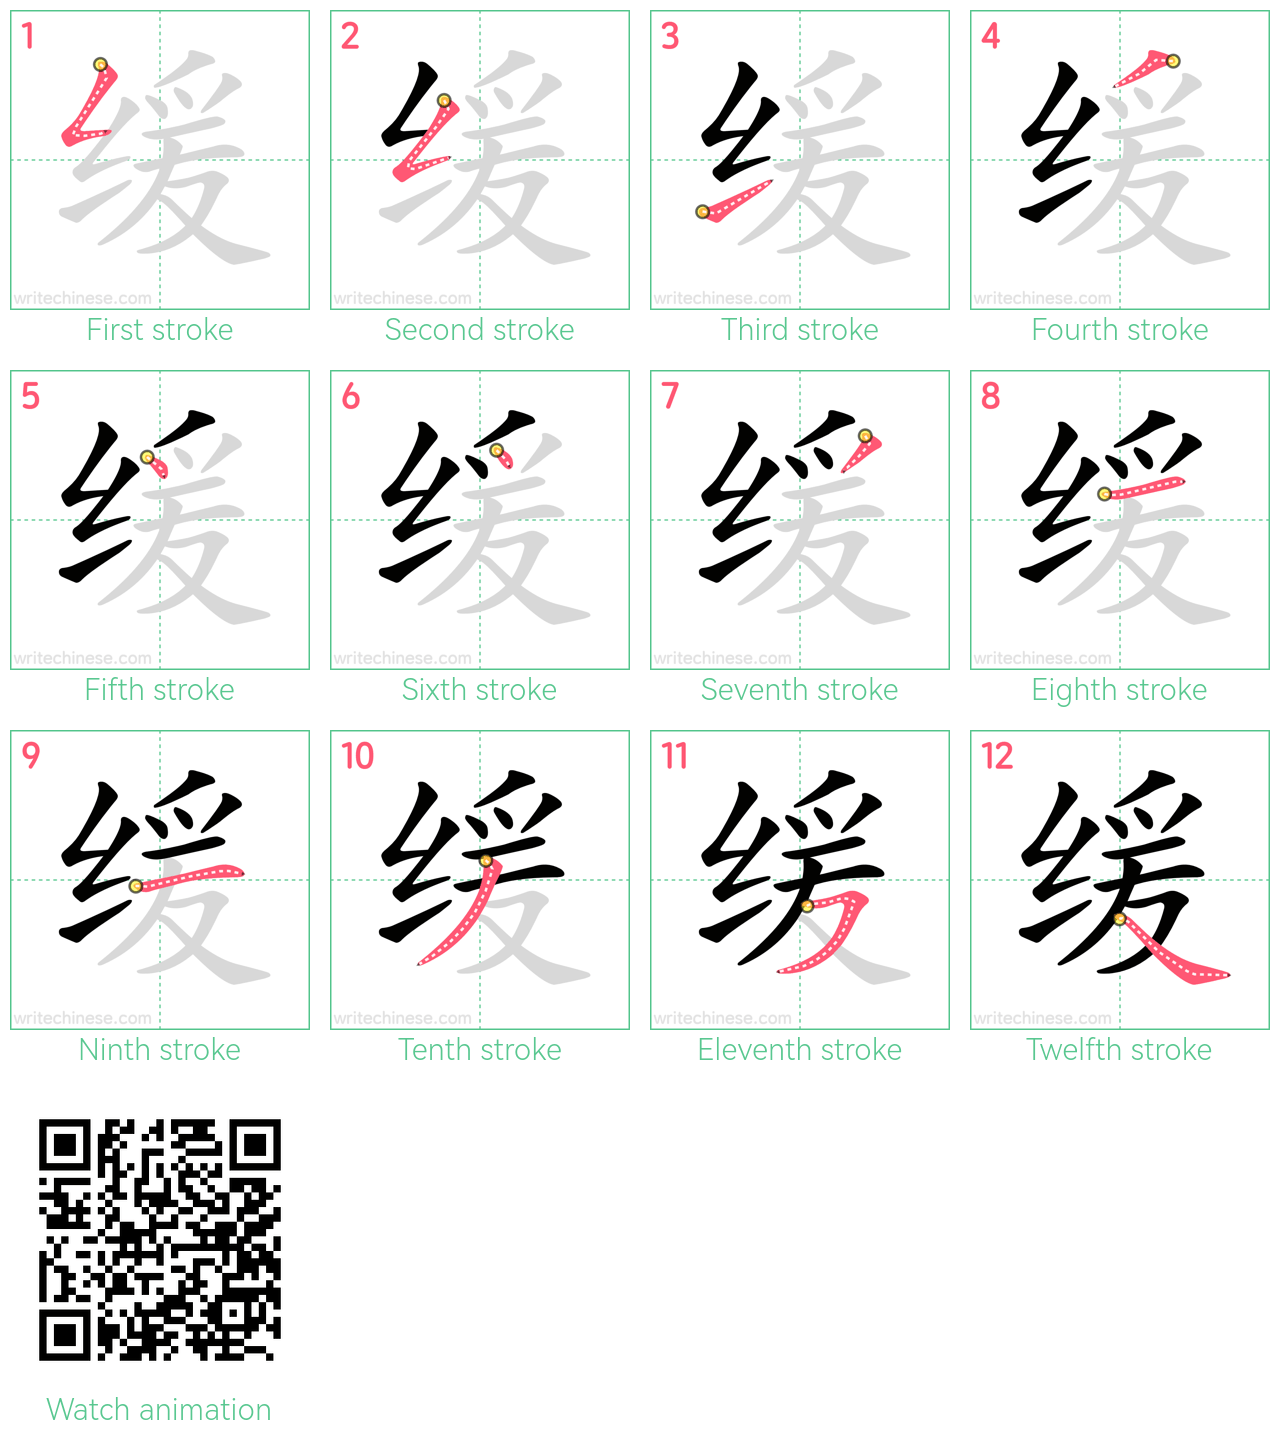 缓 step-by-step stroke order diagrams